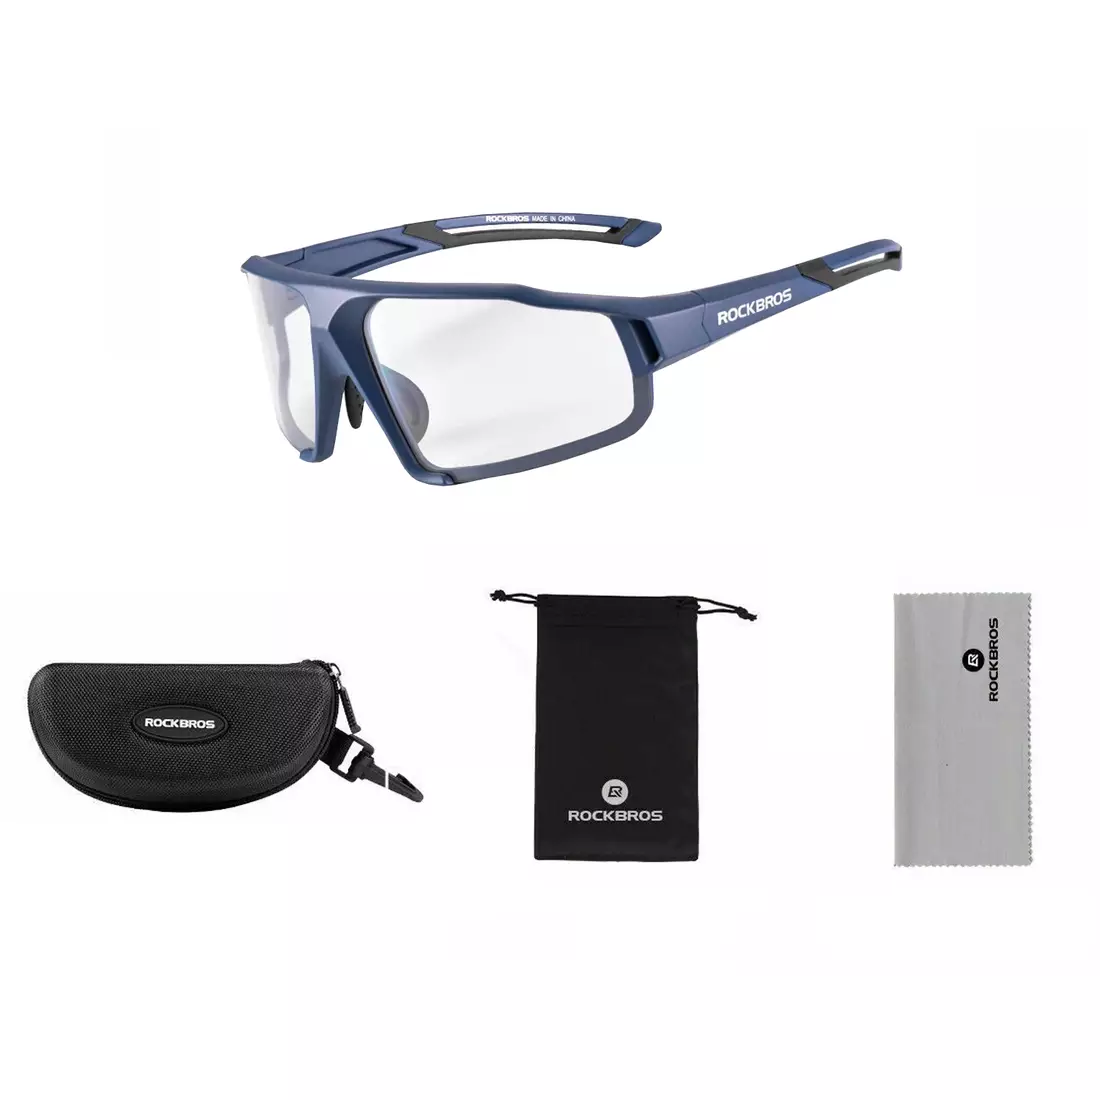 Rockbros SP216BL ochelari fotocromici pentru ciclism / sport albastru marin